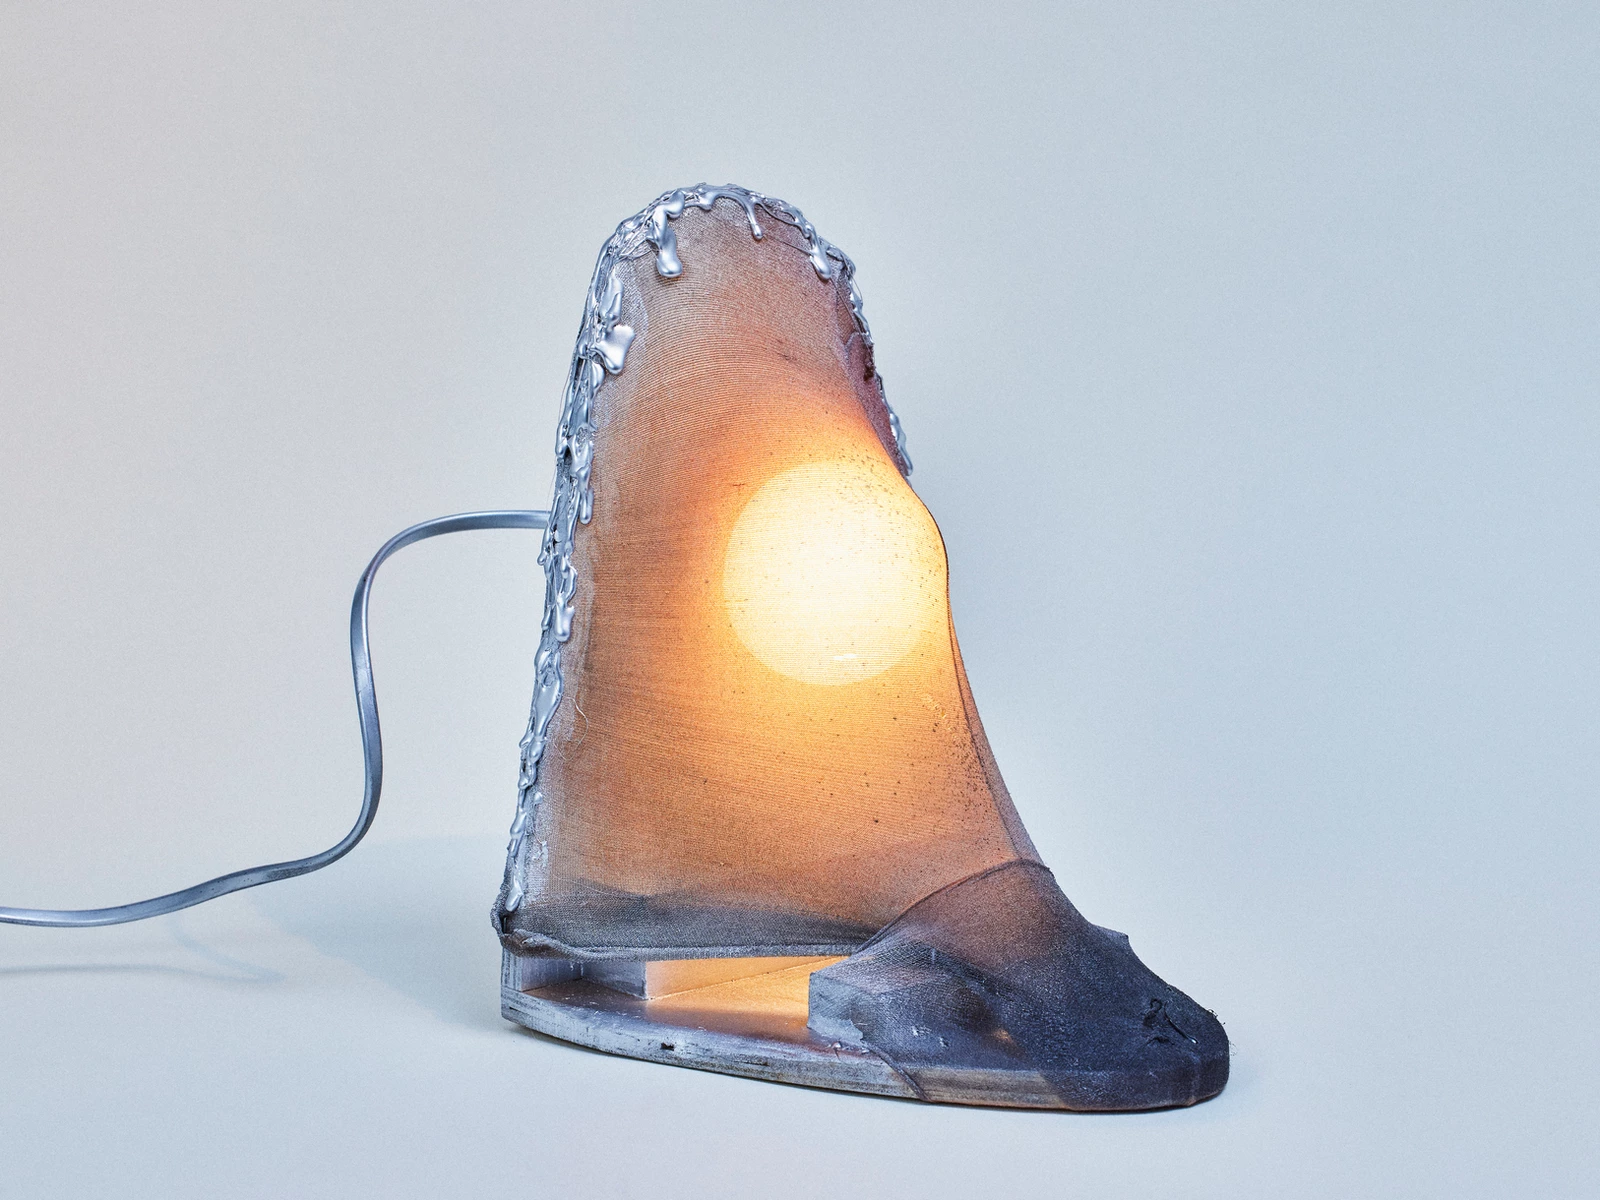 Une des lampes coquines de Matthew Lis.